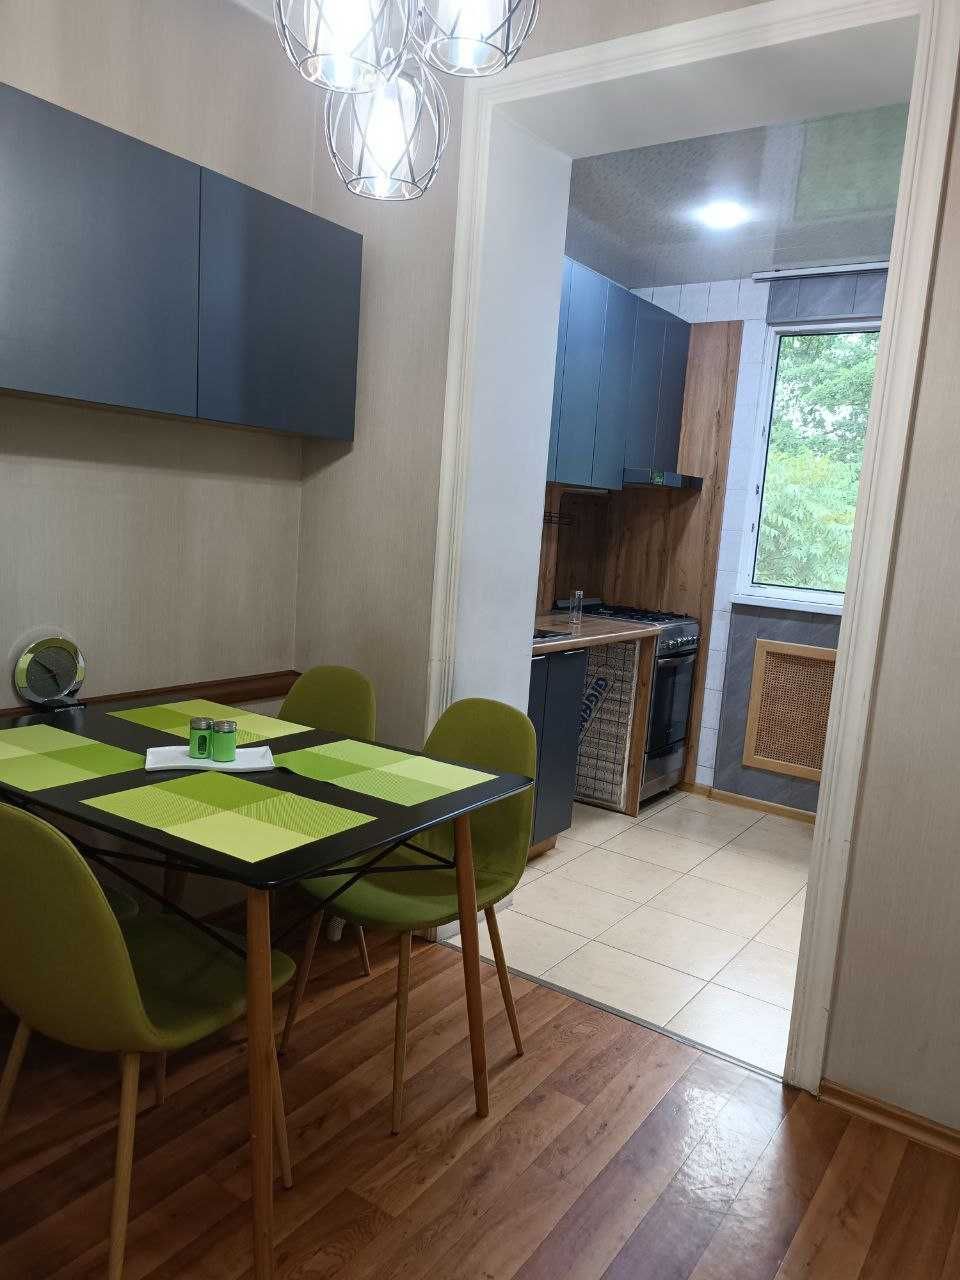 Современная квартира в Мирабадском районе с новым ремонтом и мебелью!